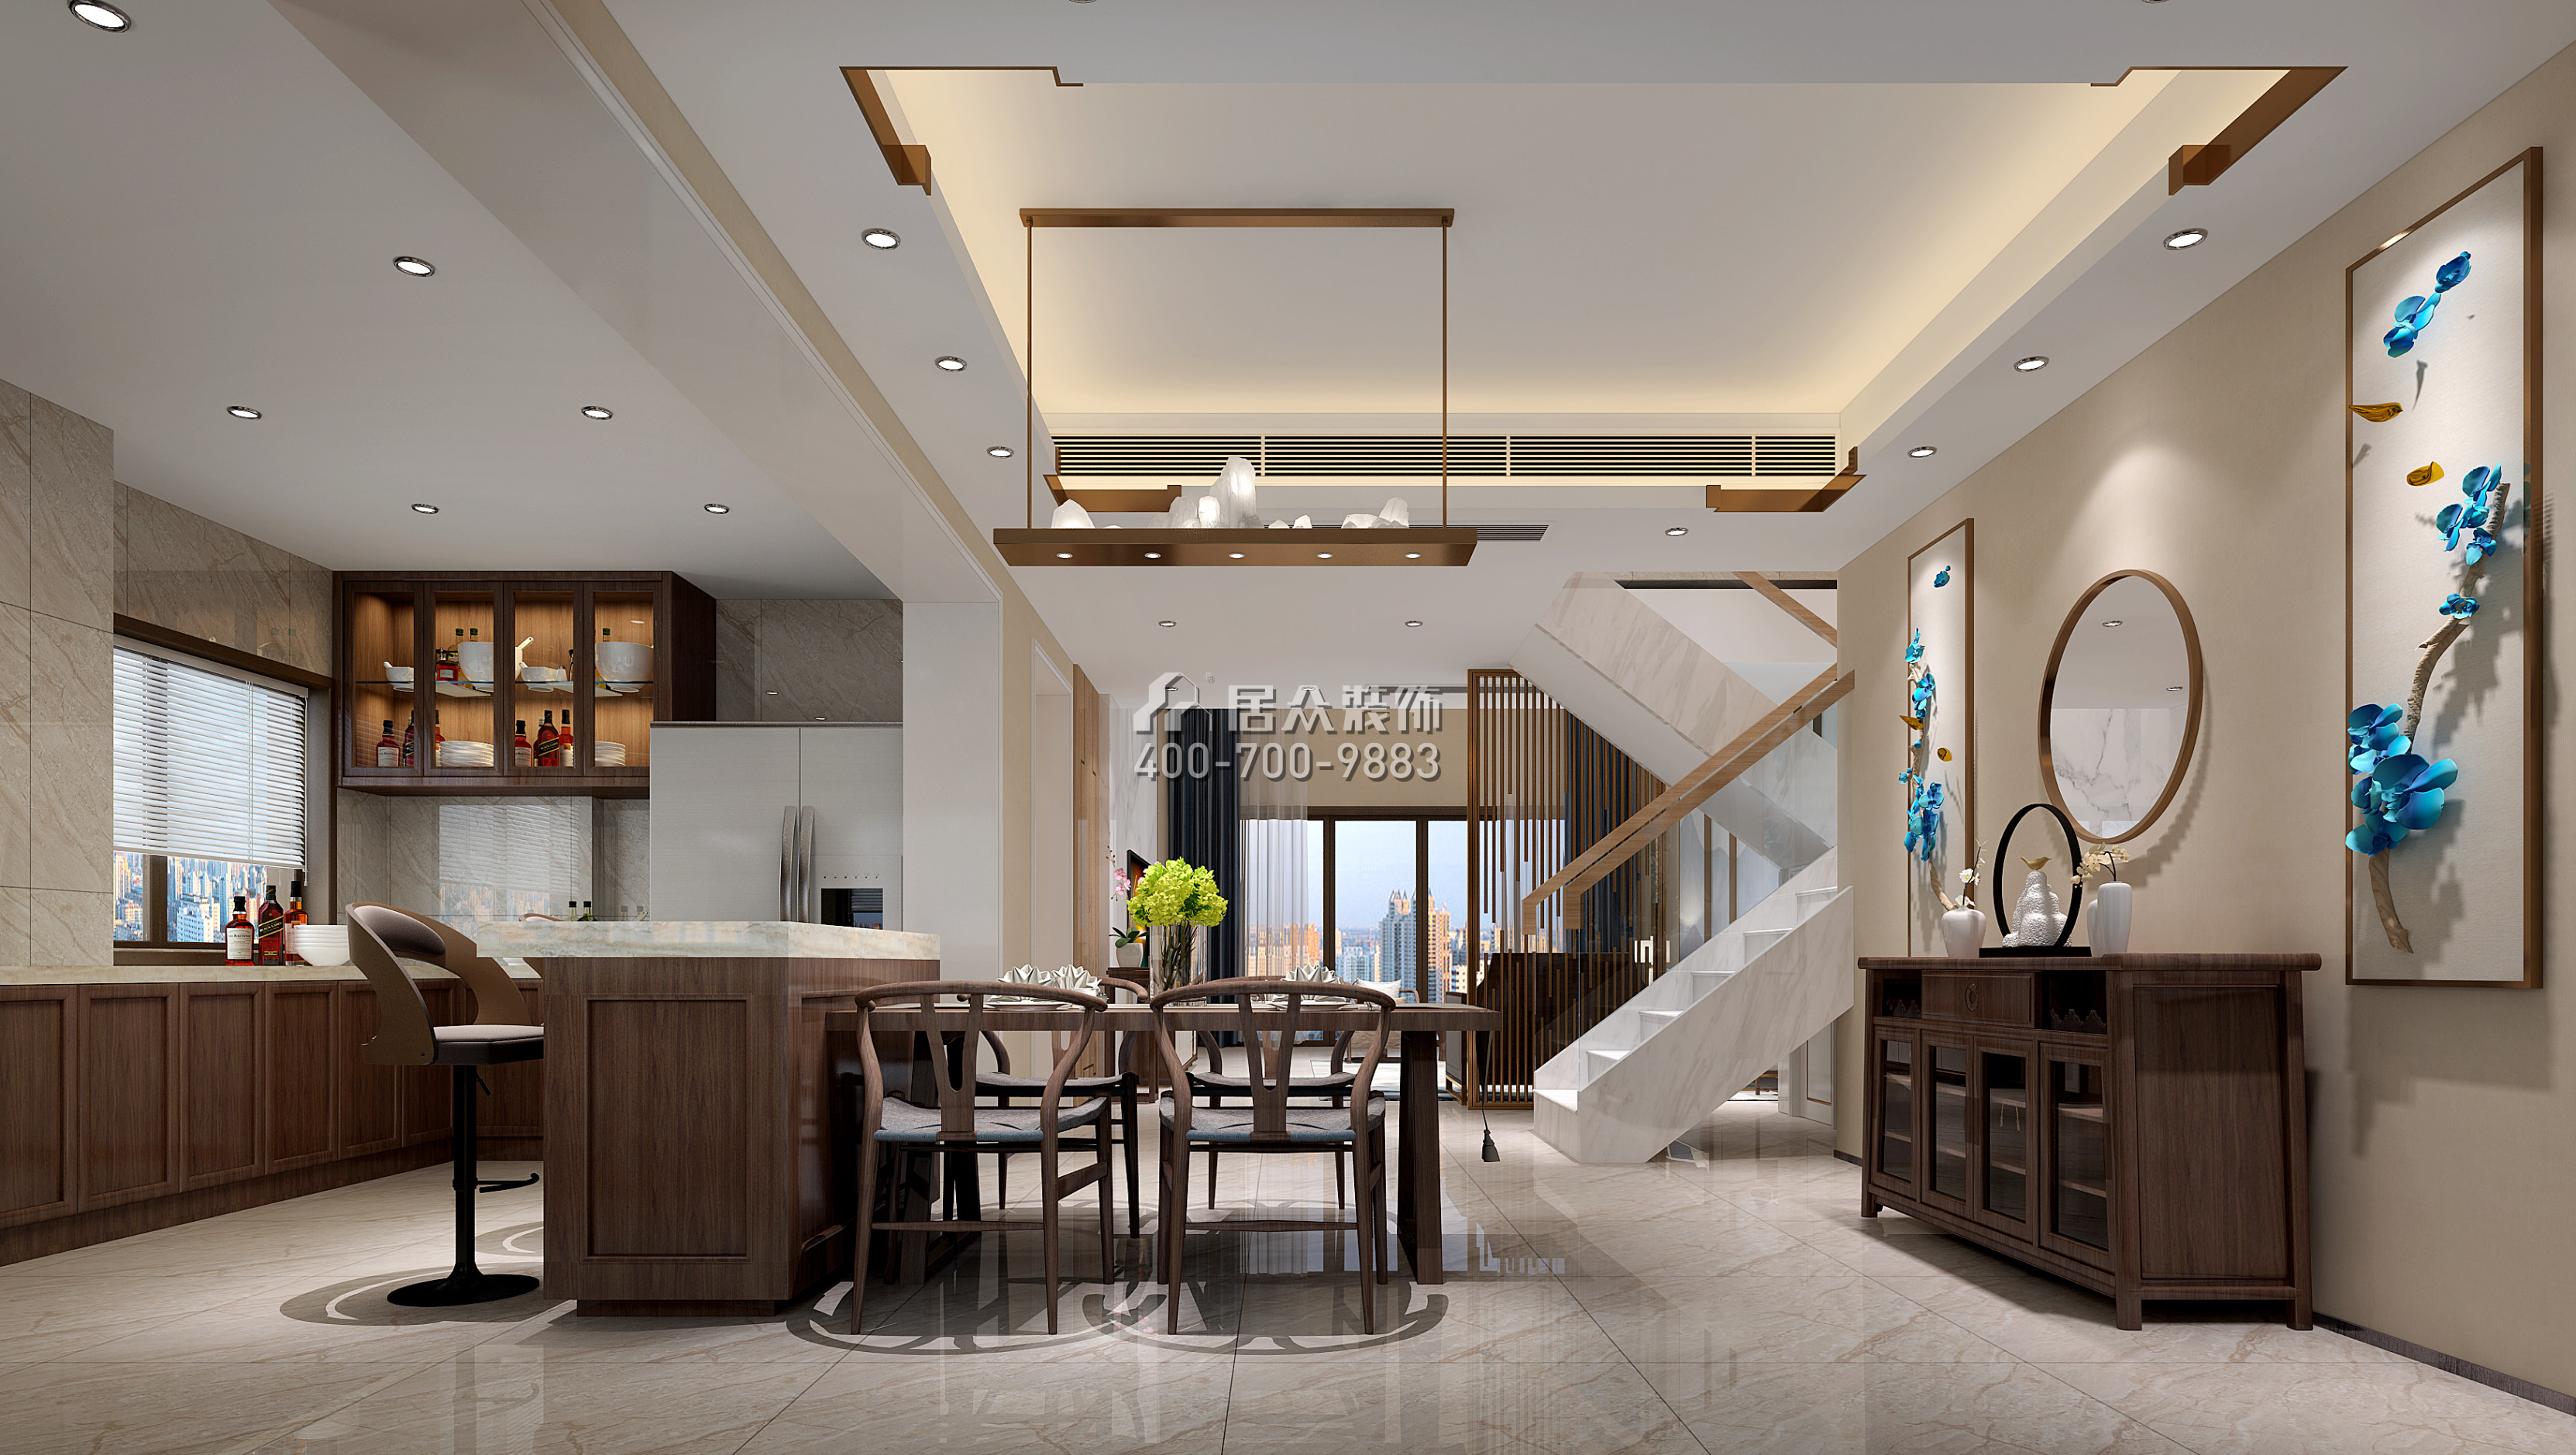 星河丹堤242平方米中式风格复式户型餐厅装修效果图